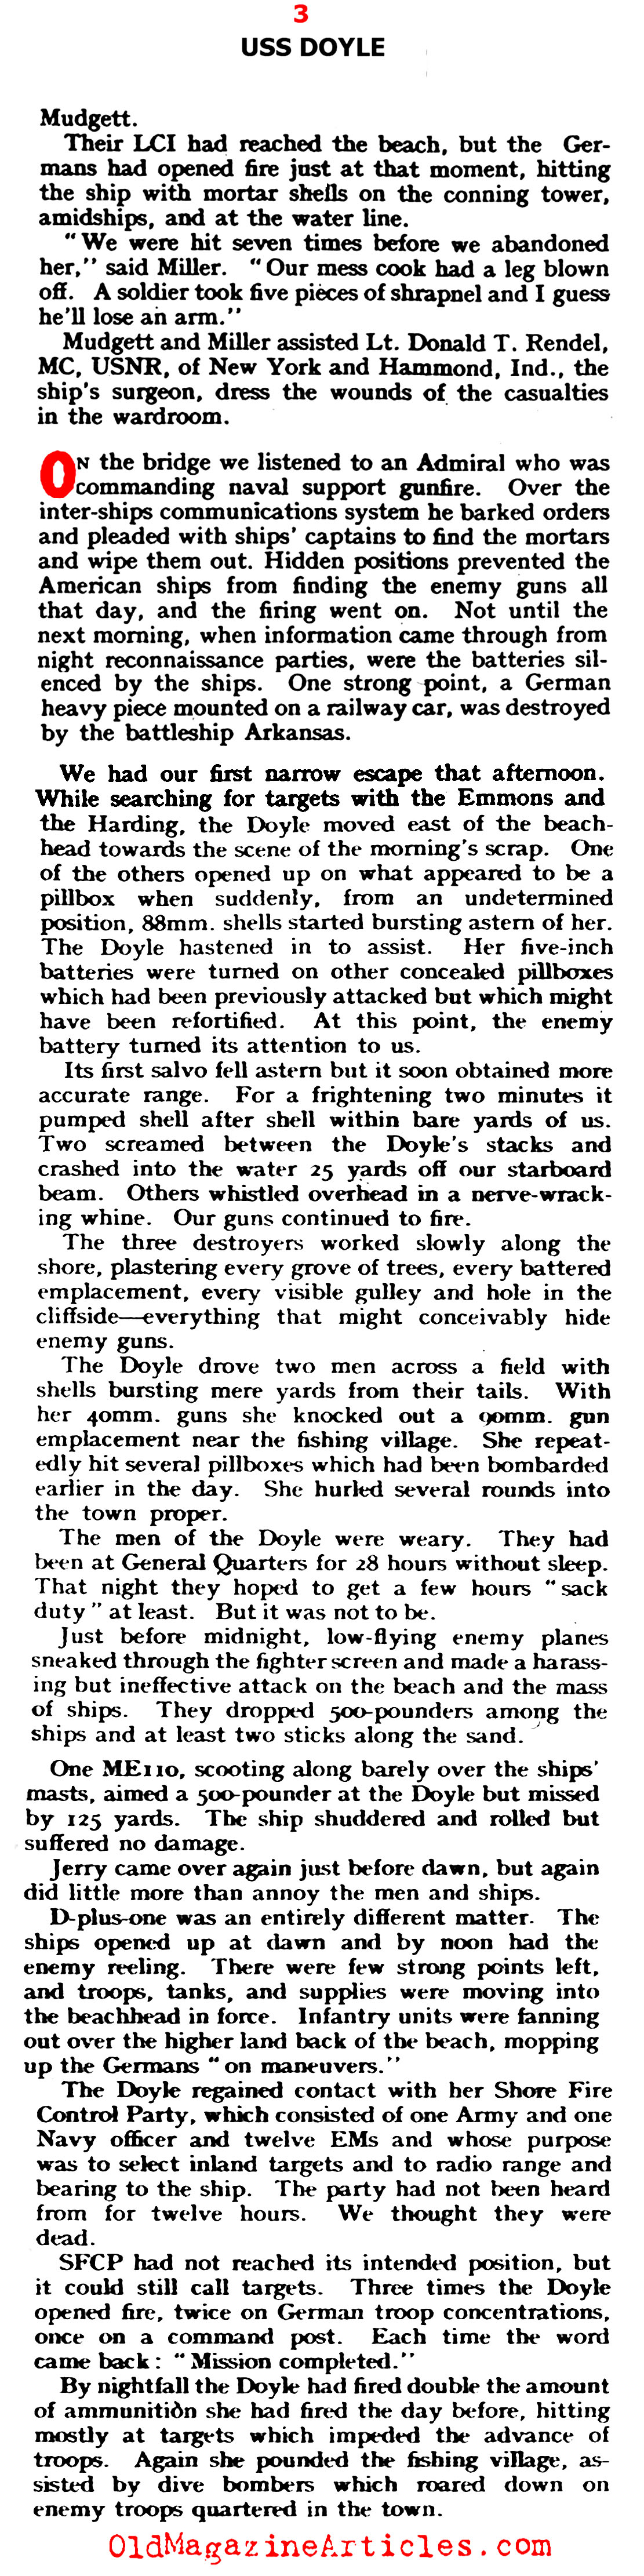 The <i>Doyle</i> Slugs It Out (Yank Magazine, 1944)